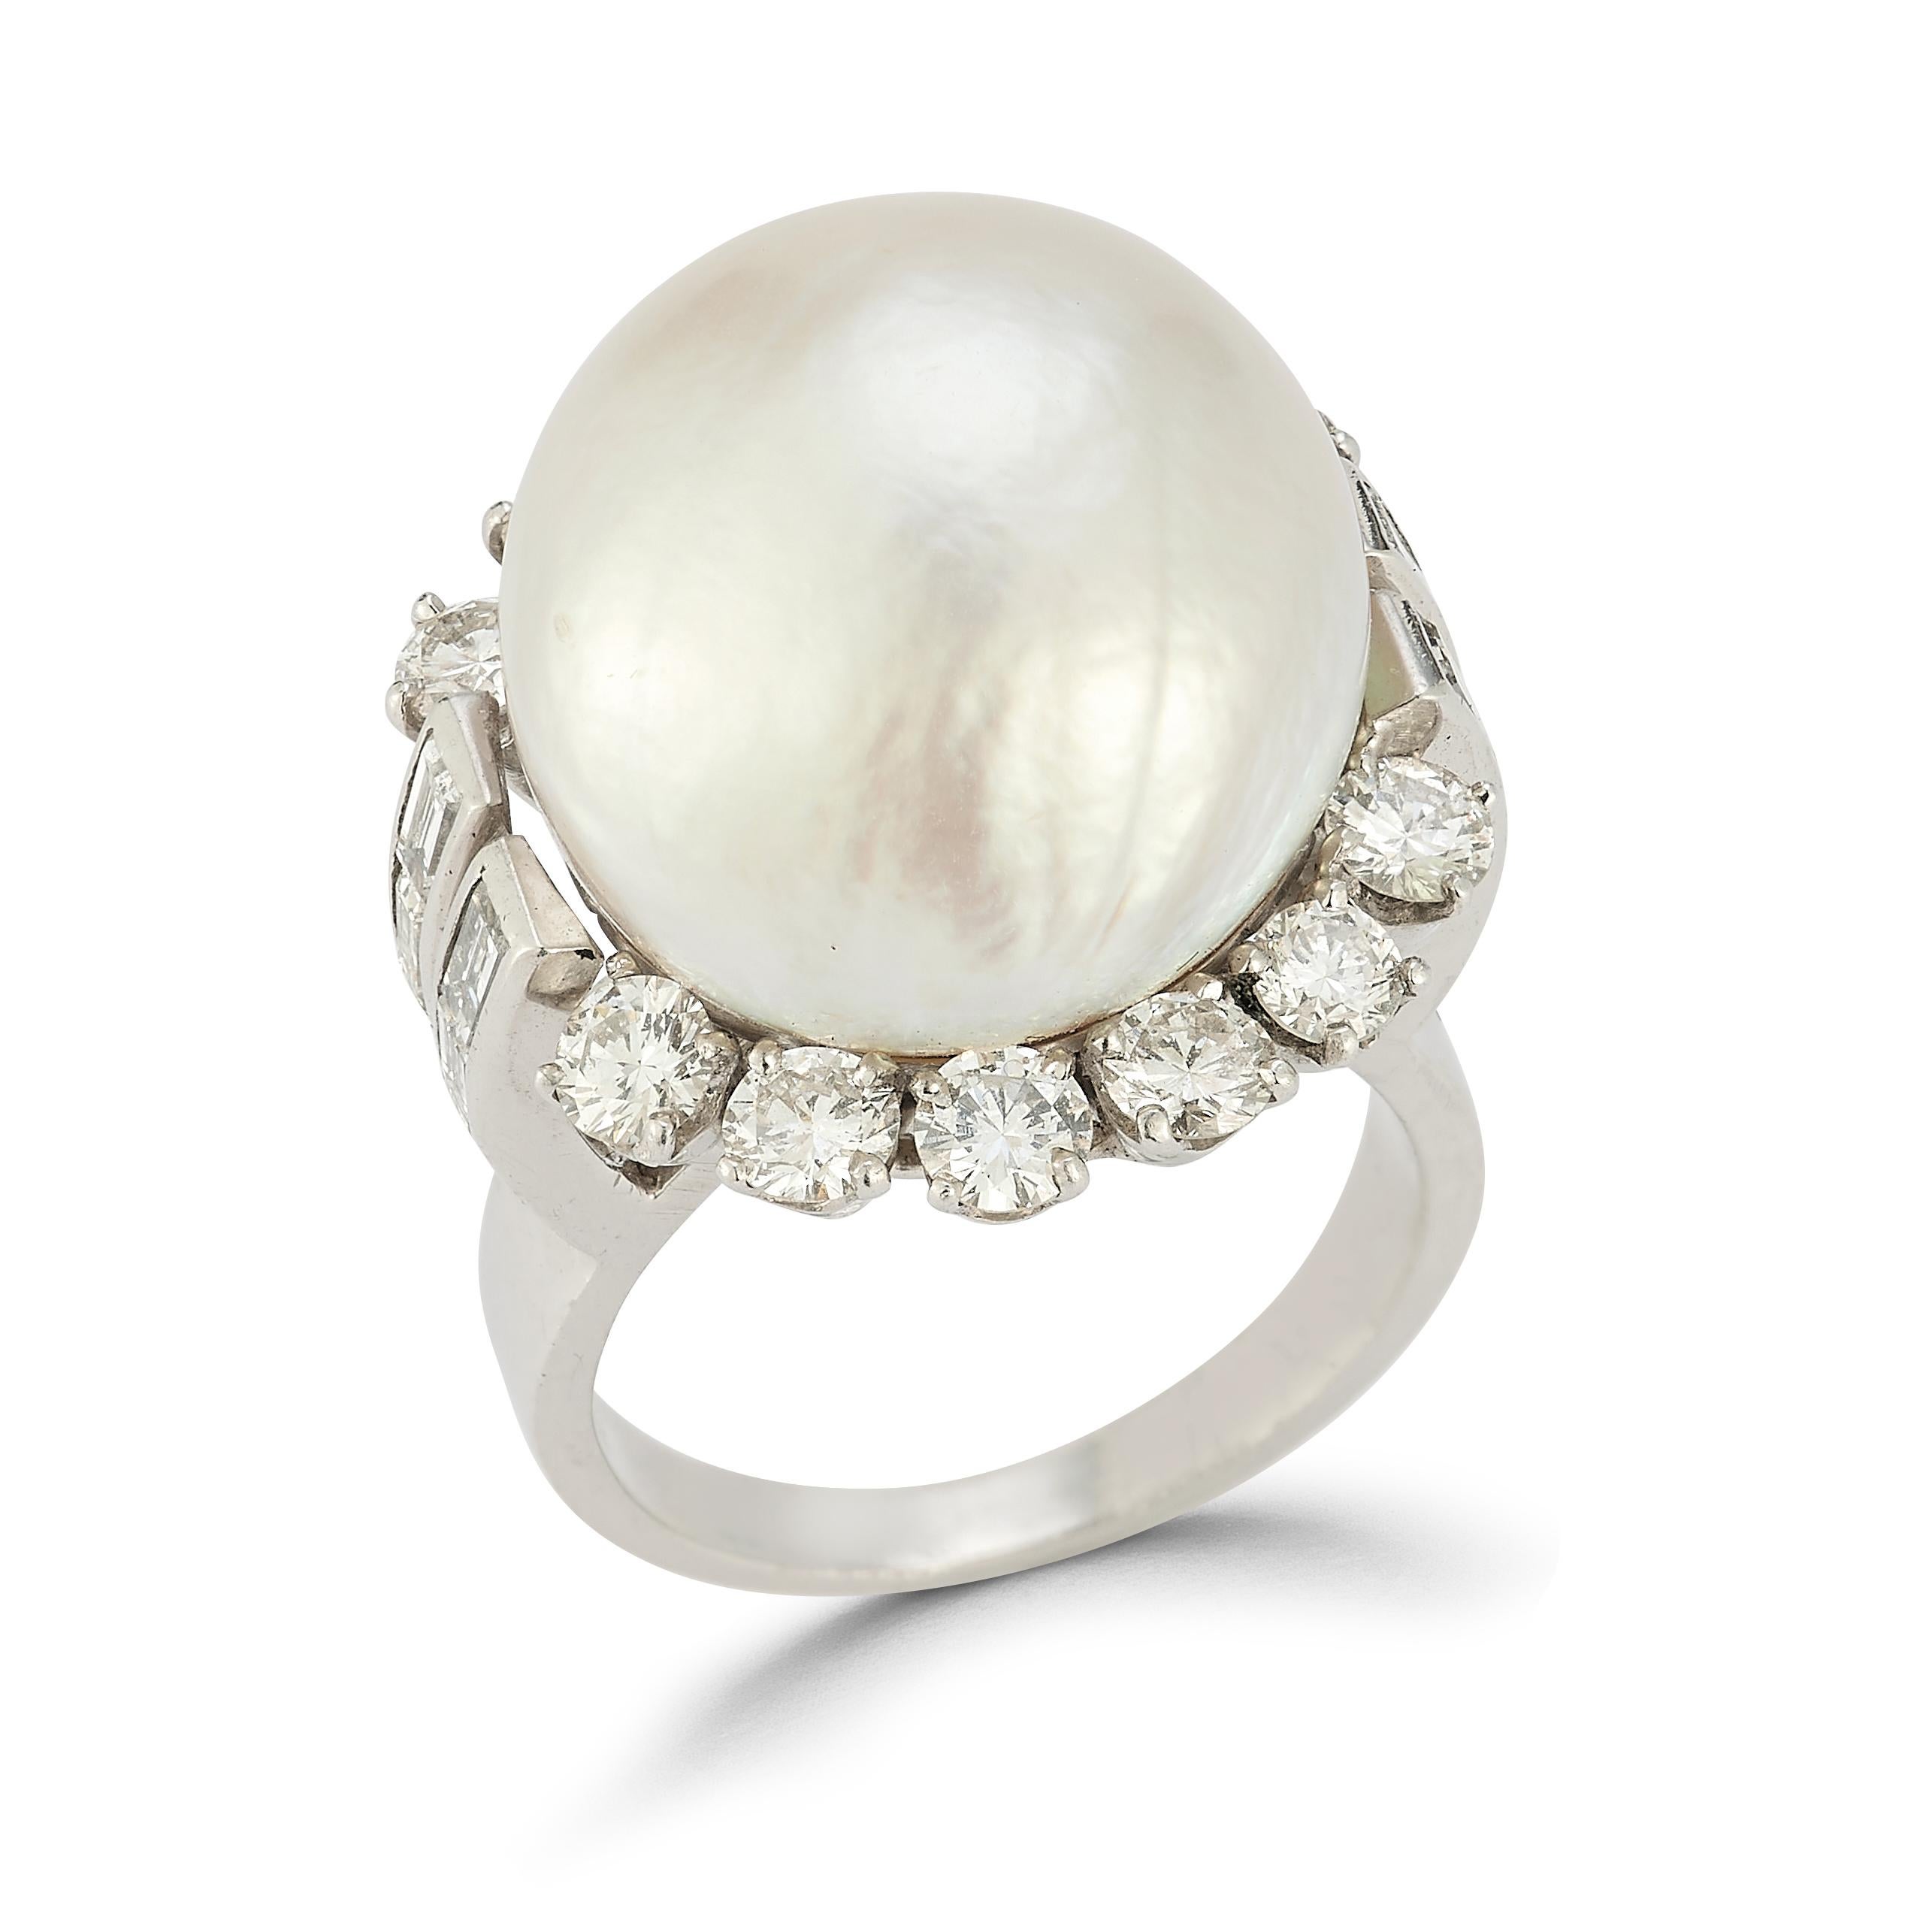 Perlen- und Diamantring

Platinring mit einer Perle, umrahmt von 12 Diamanten im Rundschliff und 12 Diamanten im Baguetteschliff

Ringgröße: 6

Kostenfrei anpassbar